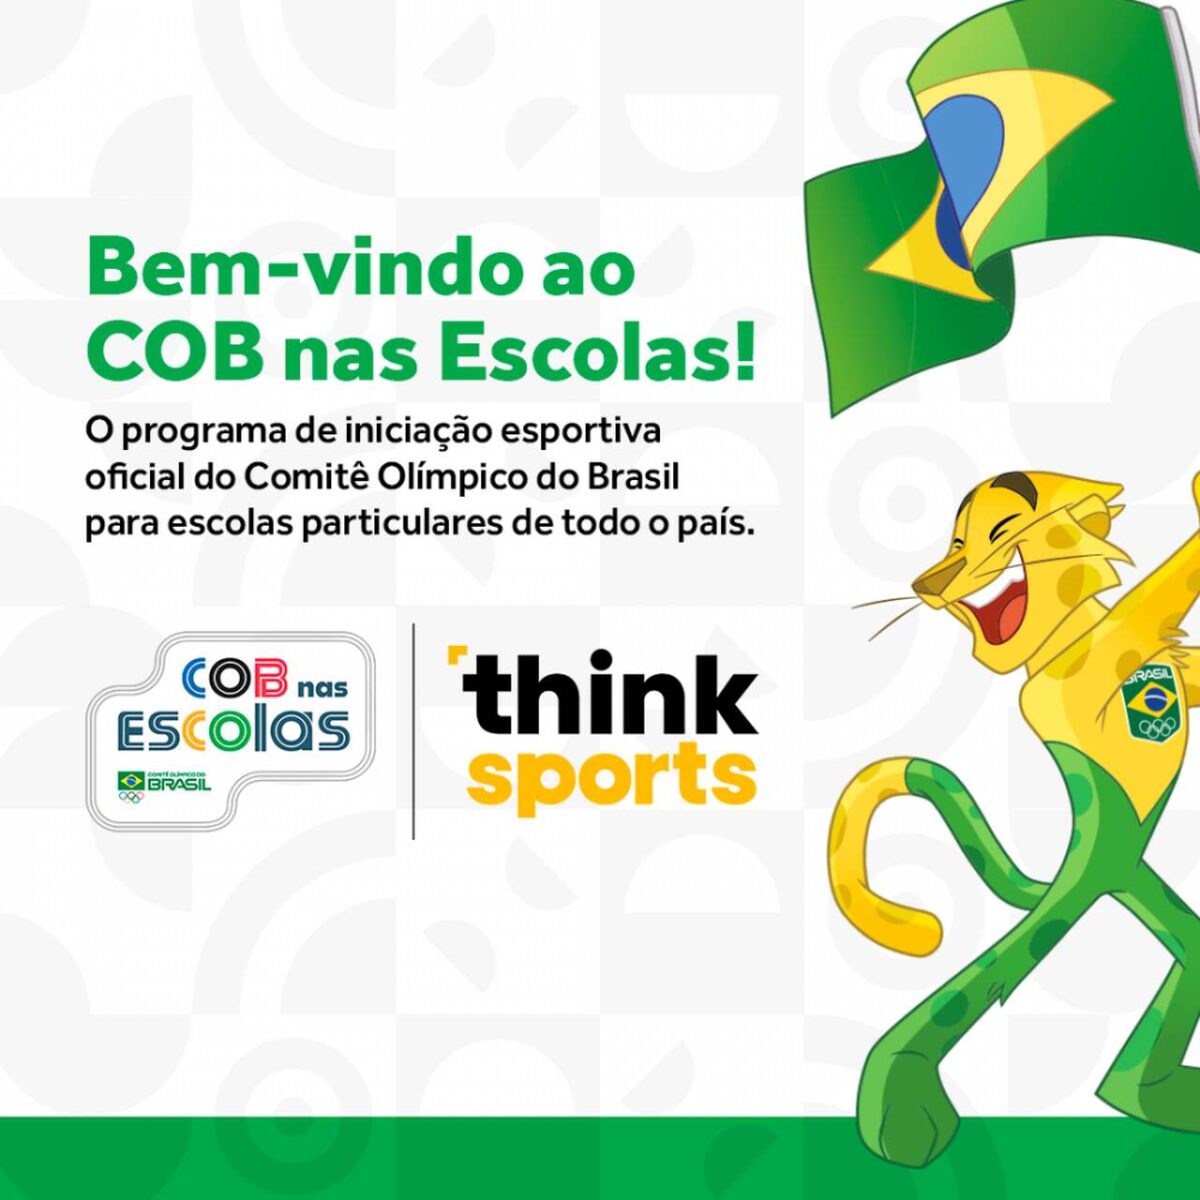 Comitê Olímpico do Brasil lança o programa COB Nas Escolas